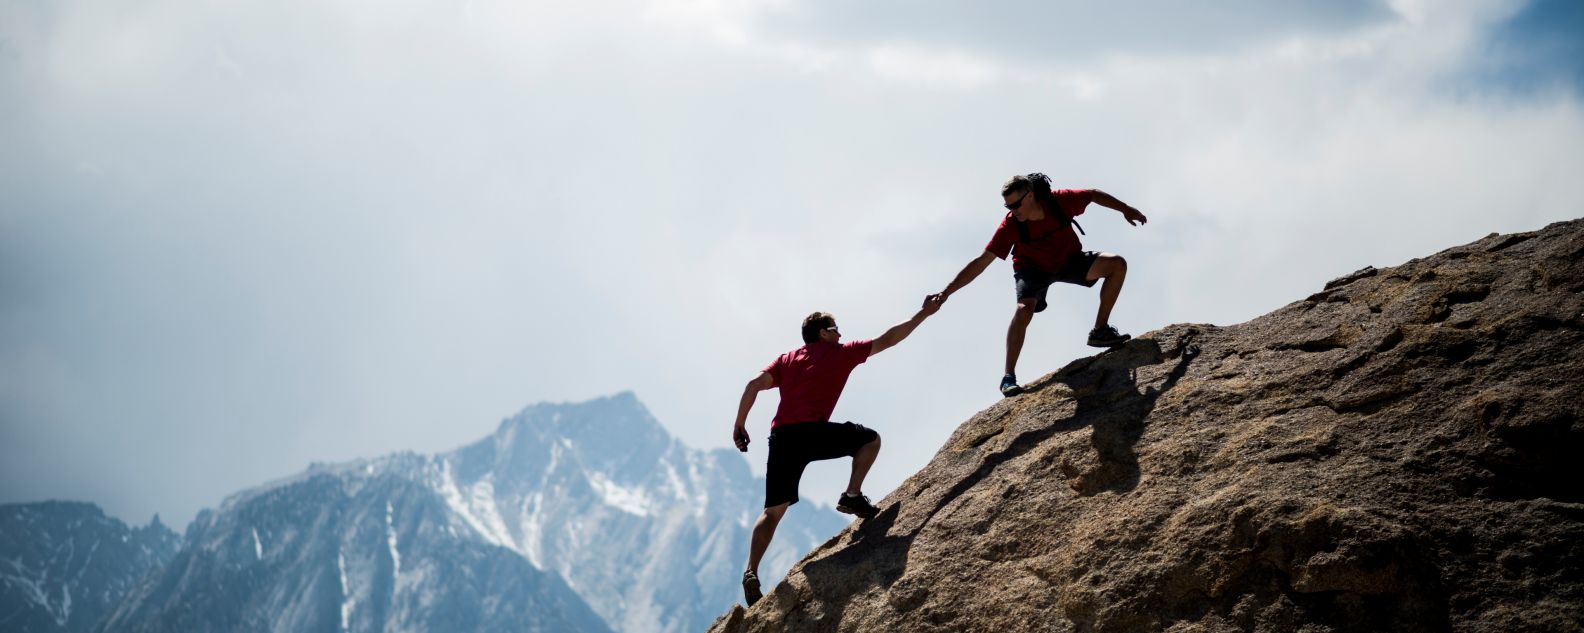 Un alpinista ayuda a otro a llegar a la cima de una roca gigante 